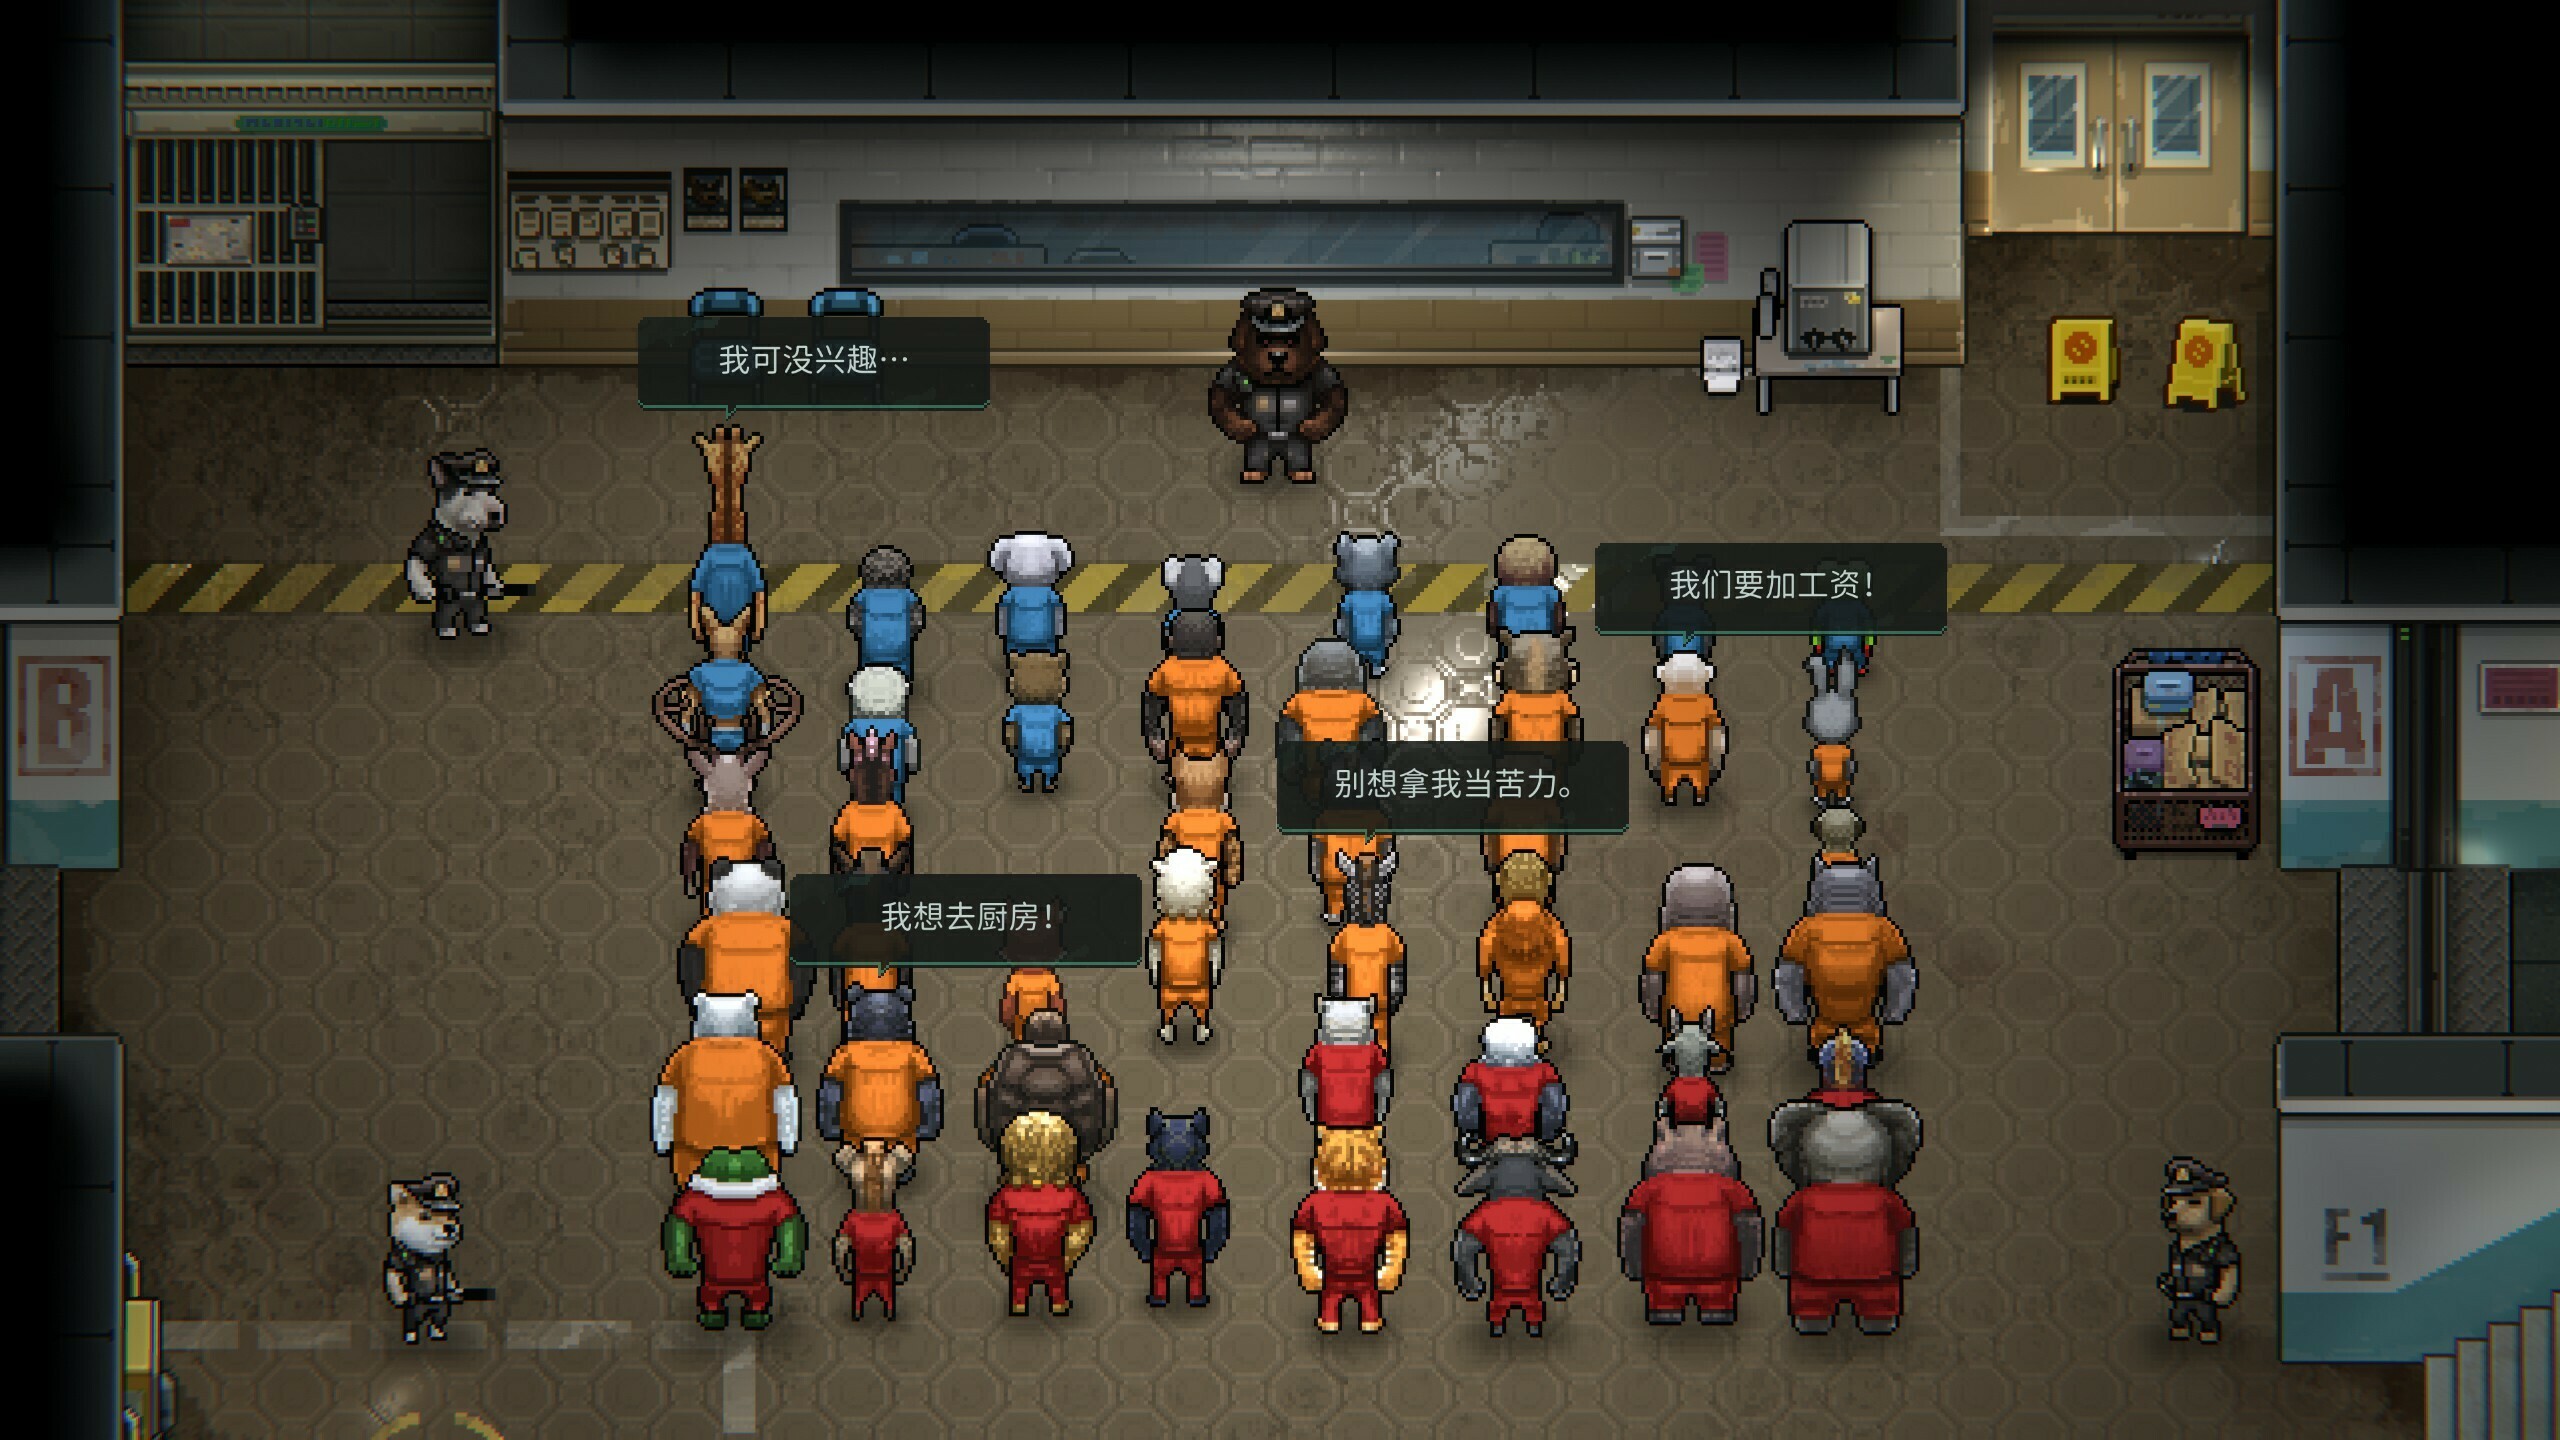 監獄中的所有囚犯都有著獨特的劇情故事等待玩家探索